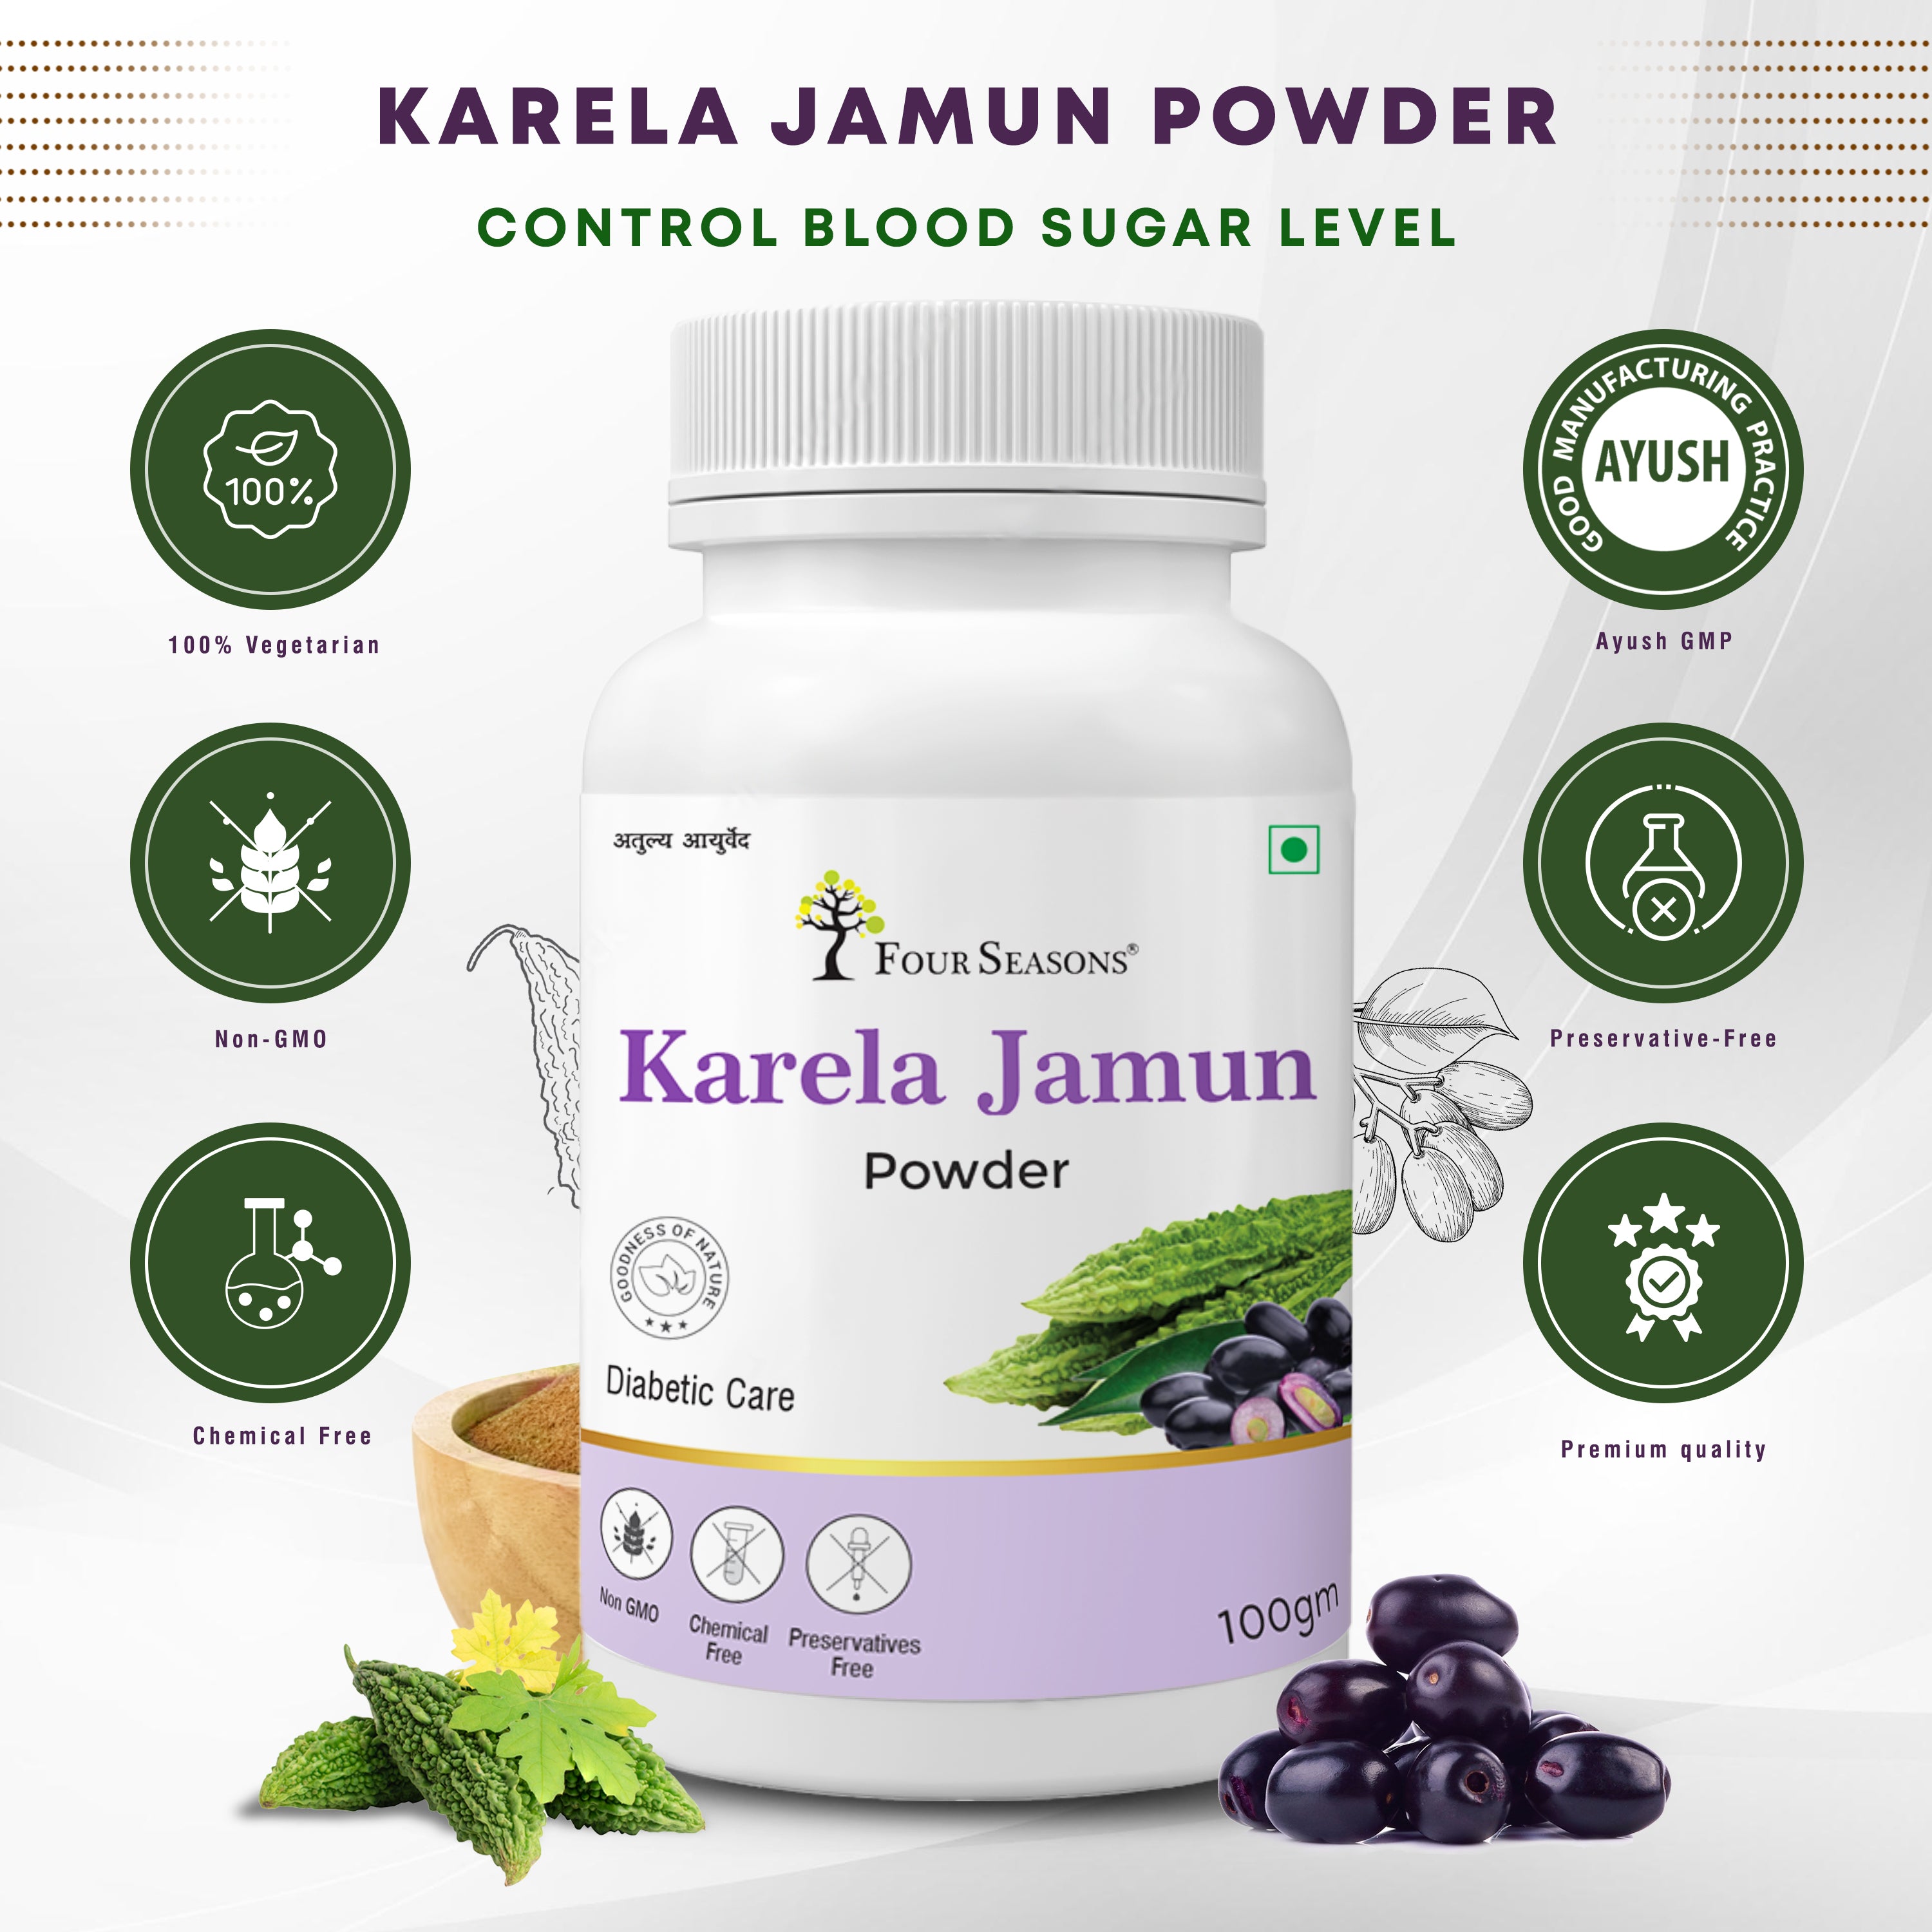 Karela Jamun Powder